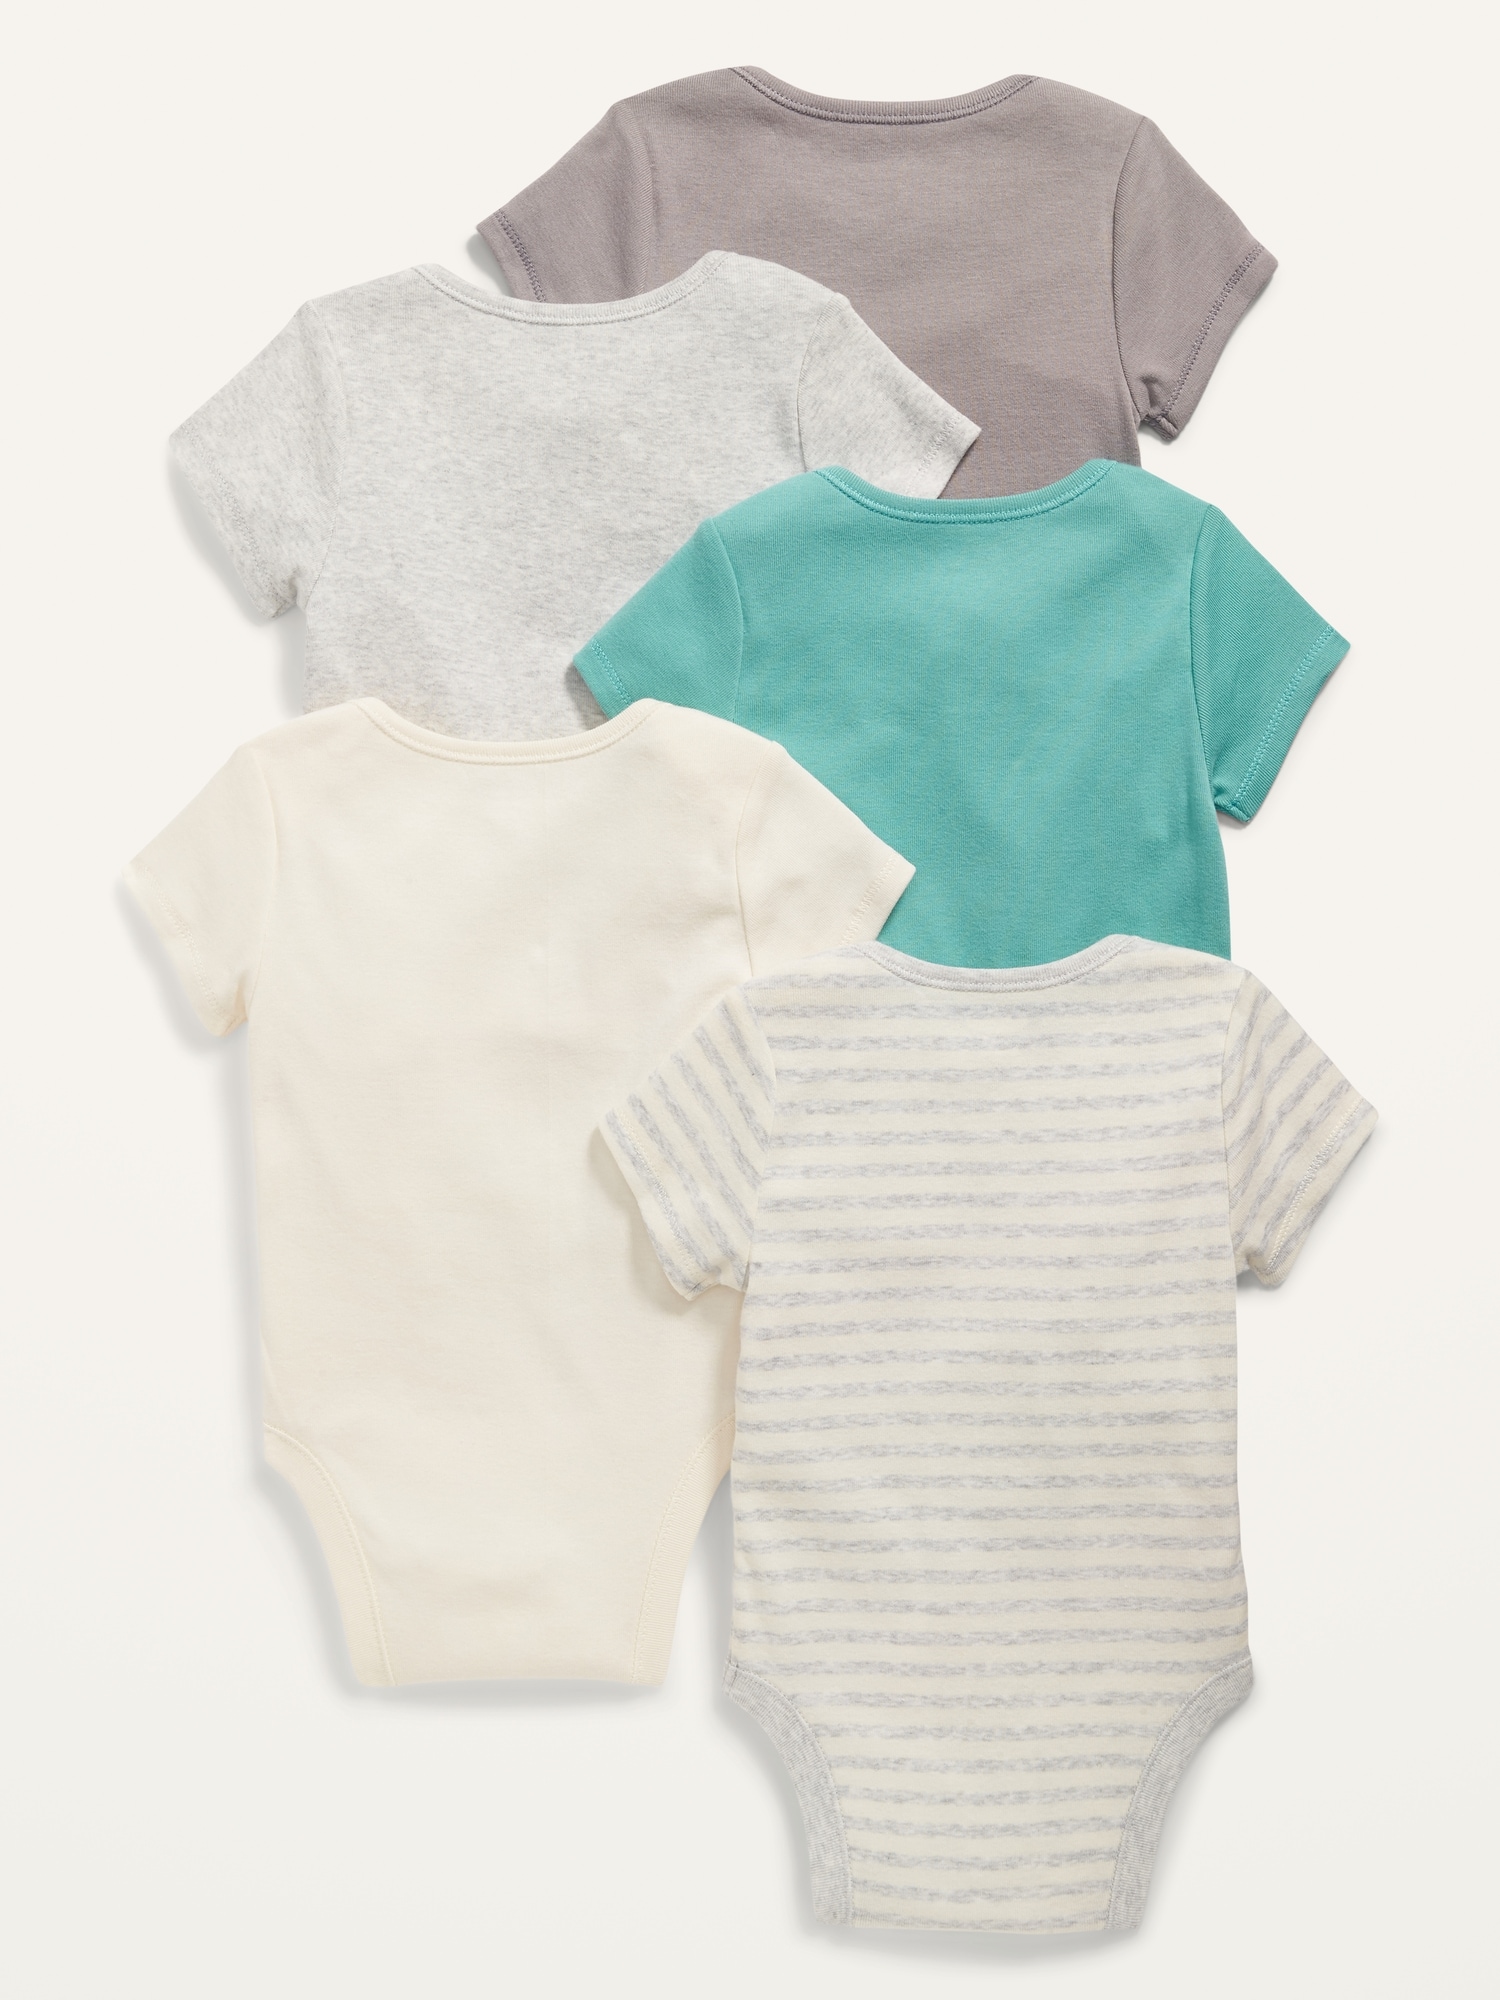 Unisex 5-Pack Short-Sleeve Bodysuit for Baby